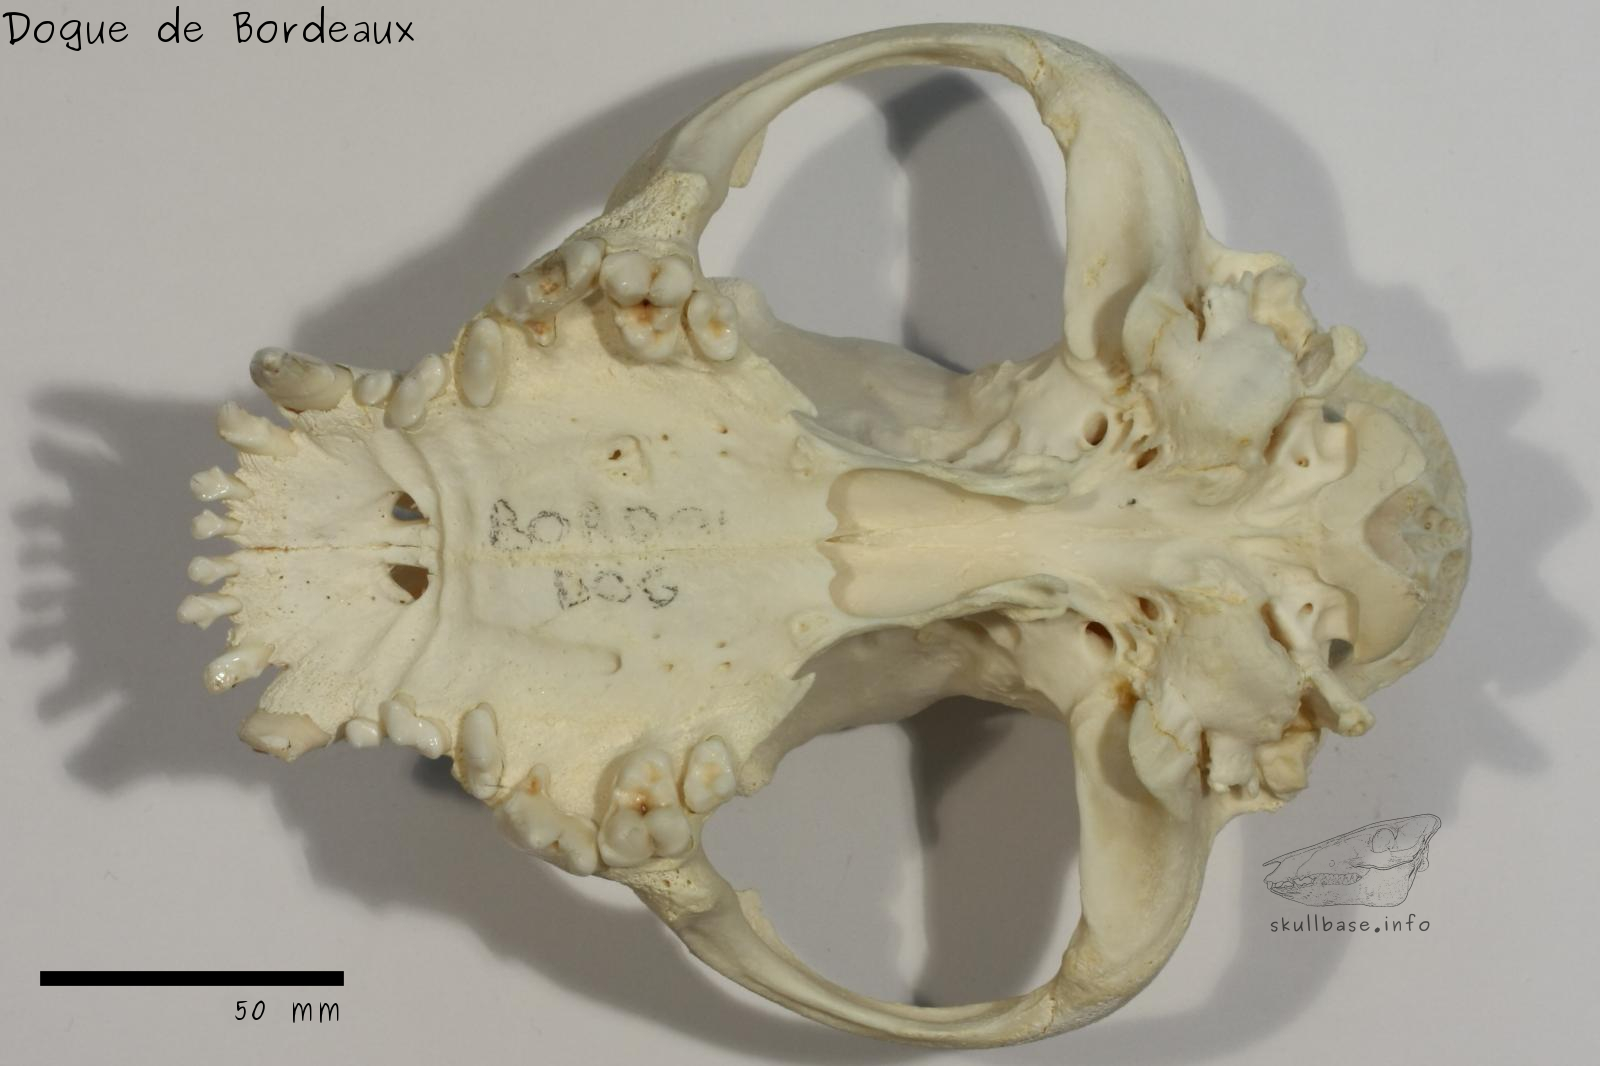 Dogue de Bordeaux (Canis lupus familiaris) skull ventral view